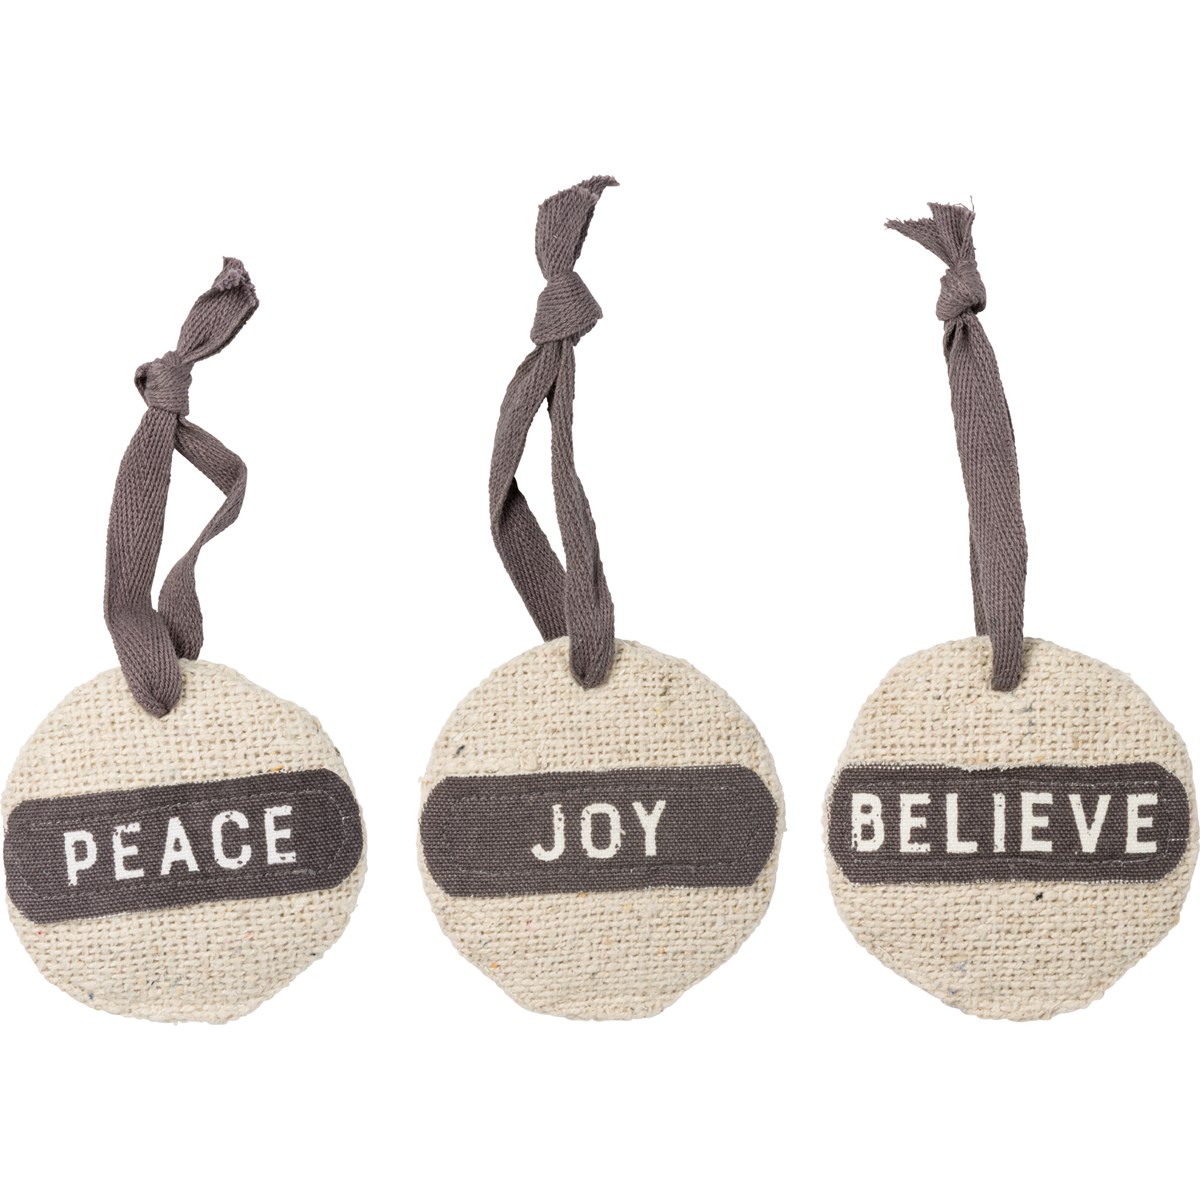 Joy Peace Believe Ornament Set - Cotton